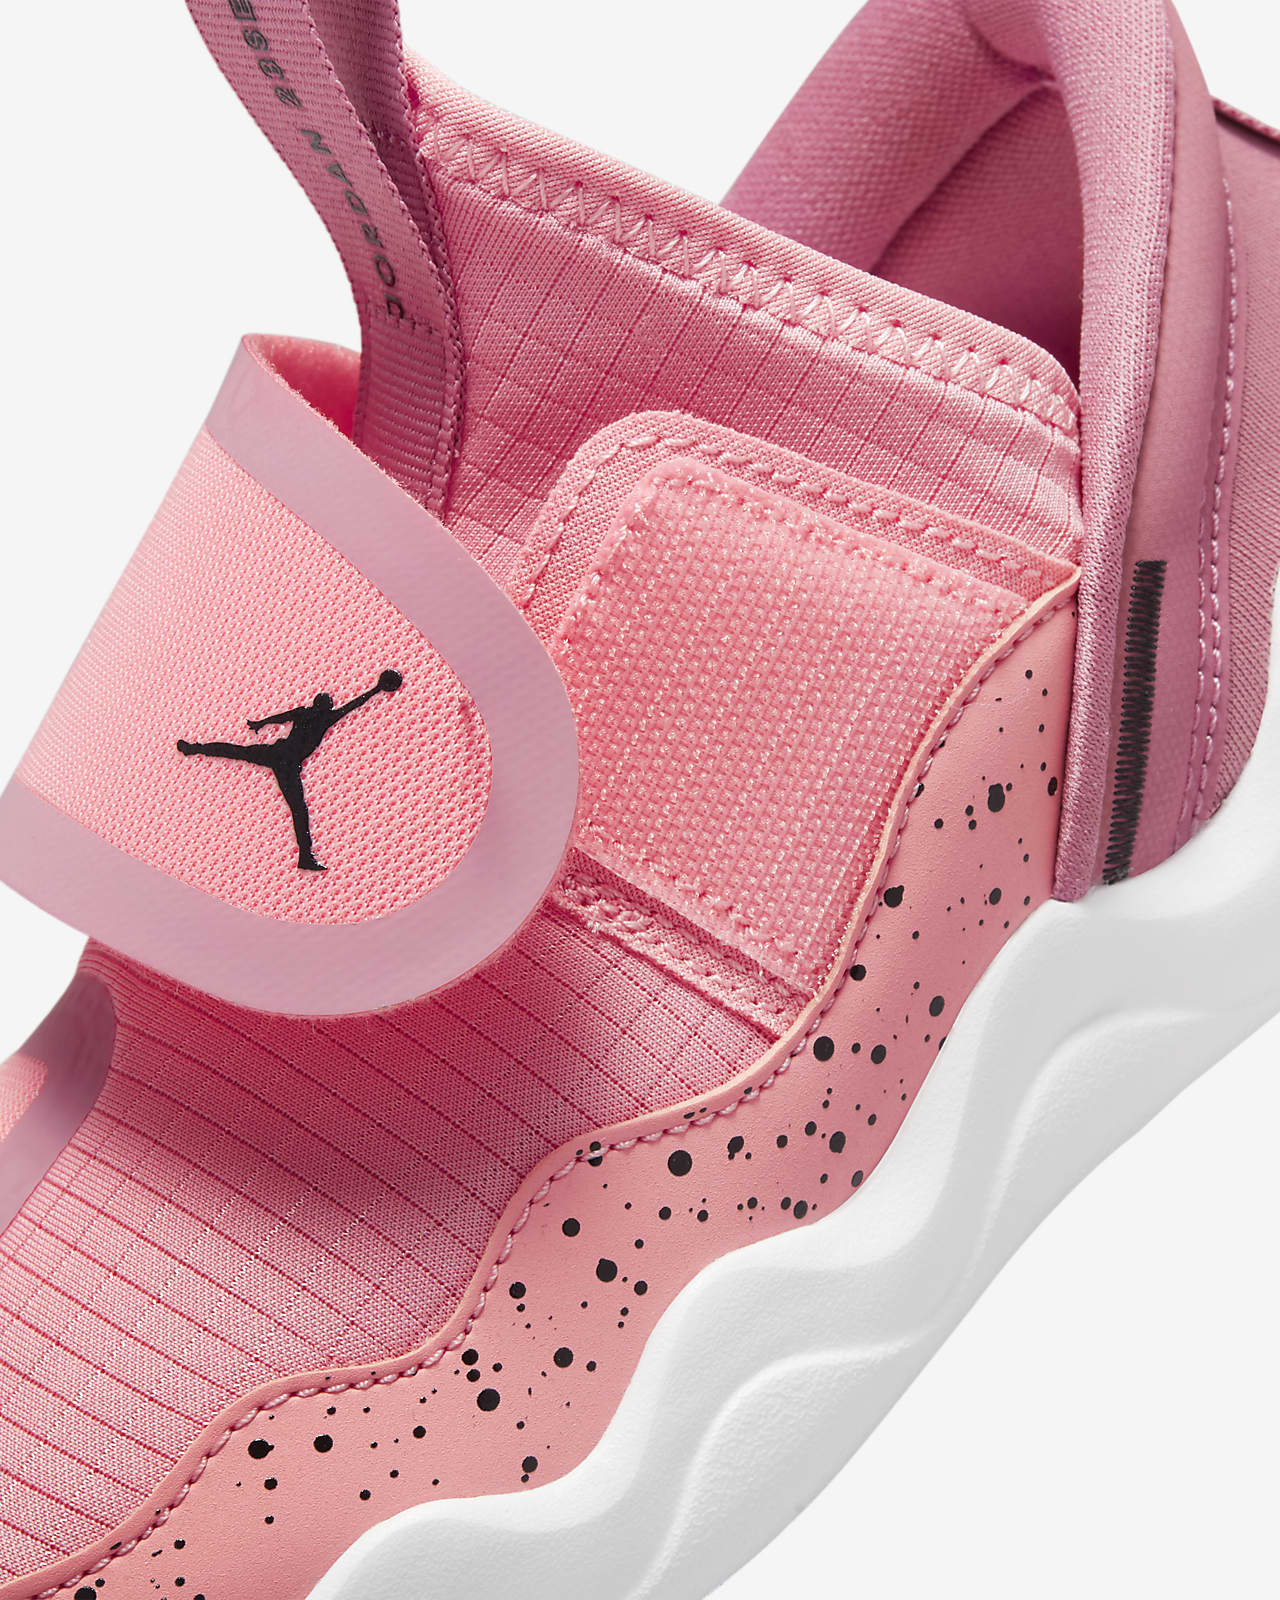 Maryanne Jones I nåde af Våd Jordan 23/7-sko til mindre børn. Nike DK